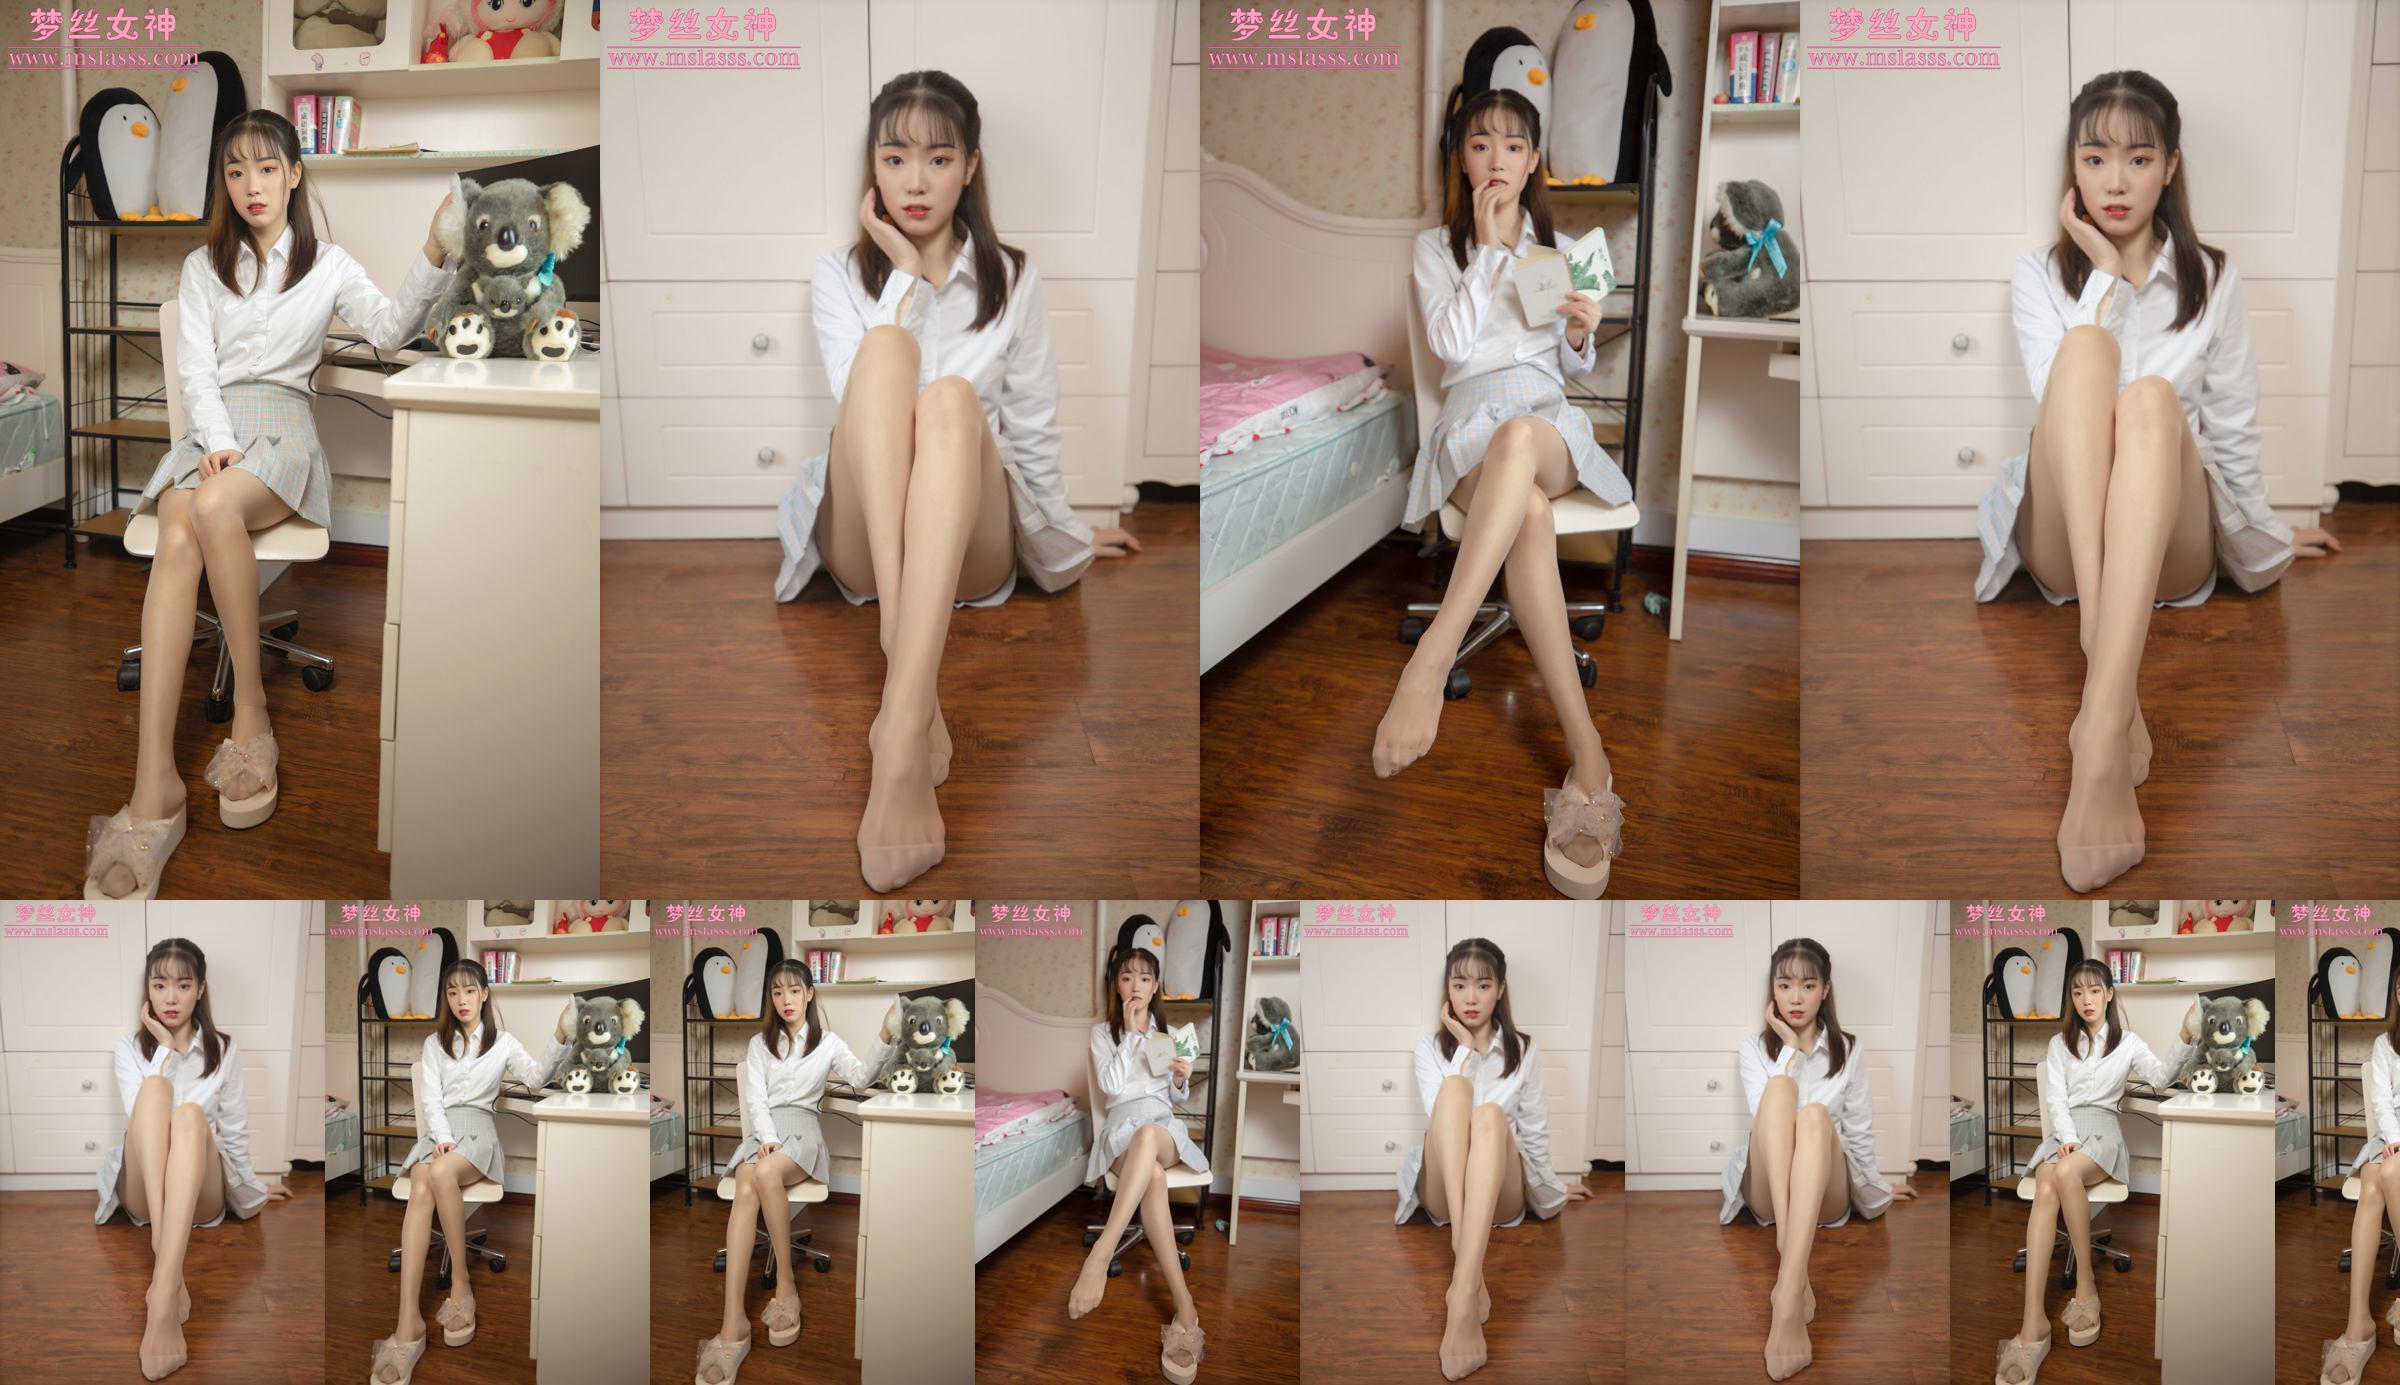 [MSLASS] Zhang Qiying nữ thần người mẫu mới No.94a79c Trang 1